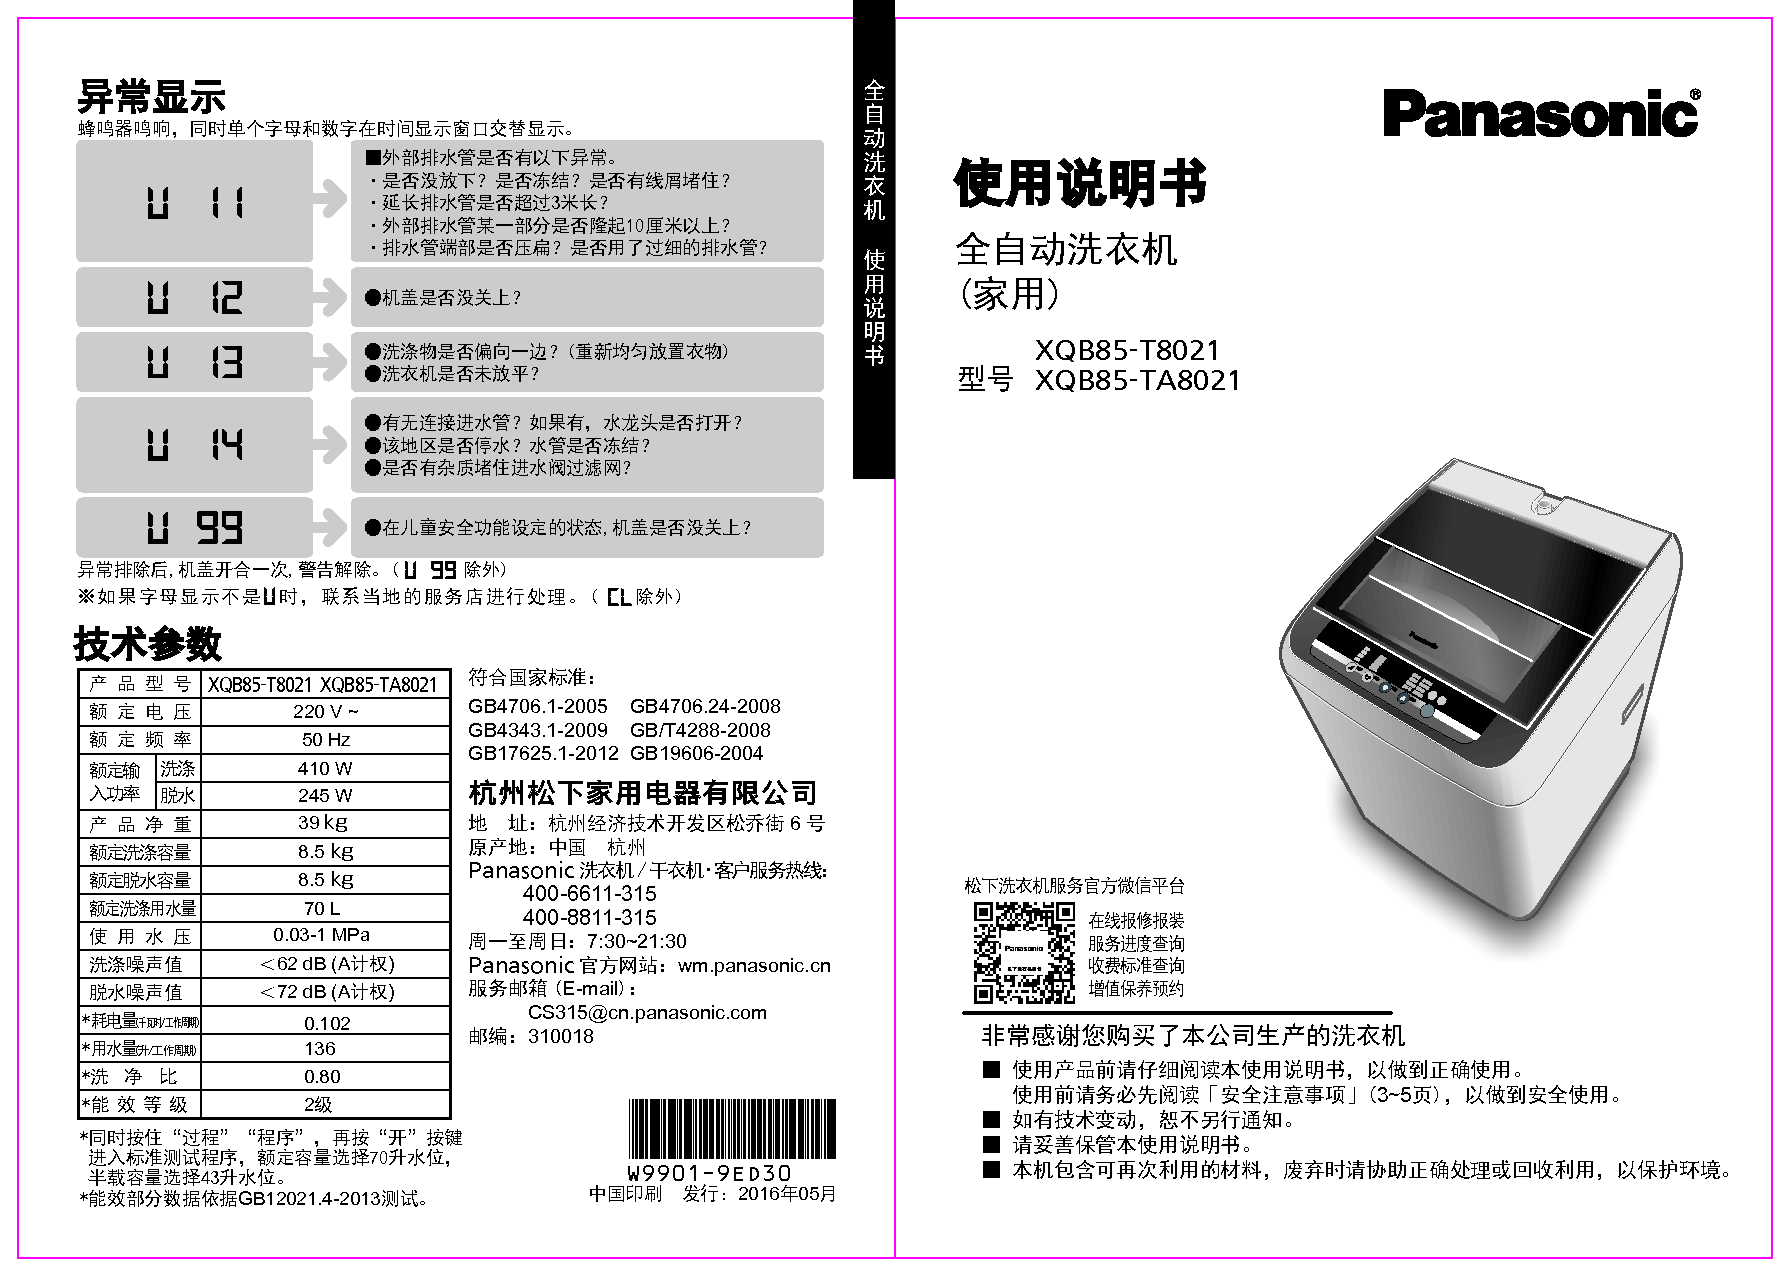 松下 Panasonic XQB85-T8021 使用说明书 封面